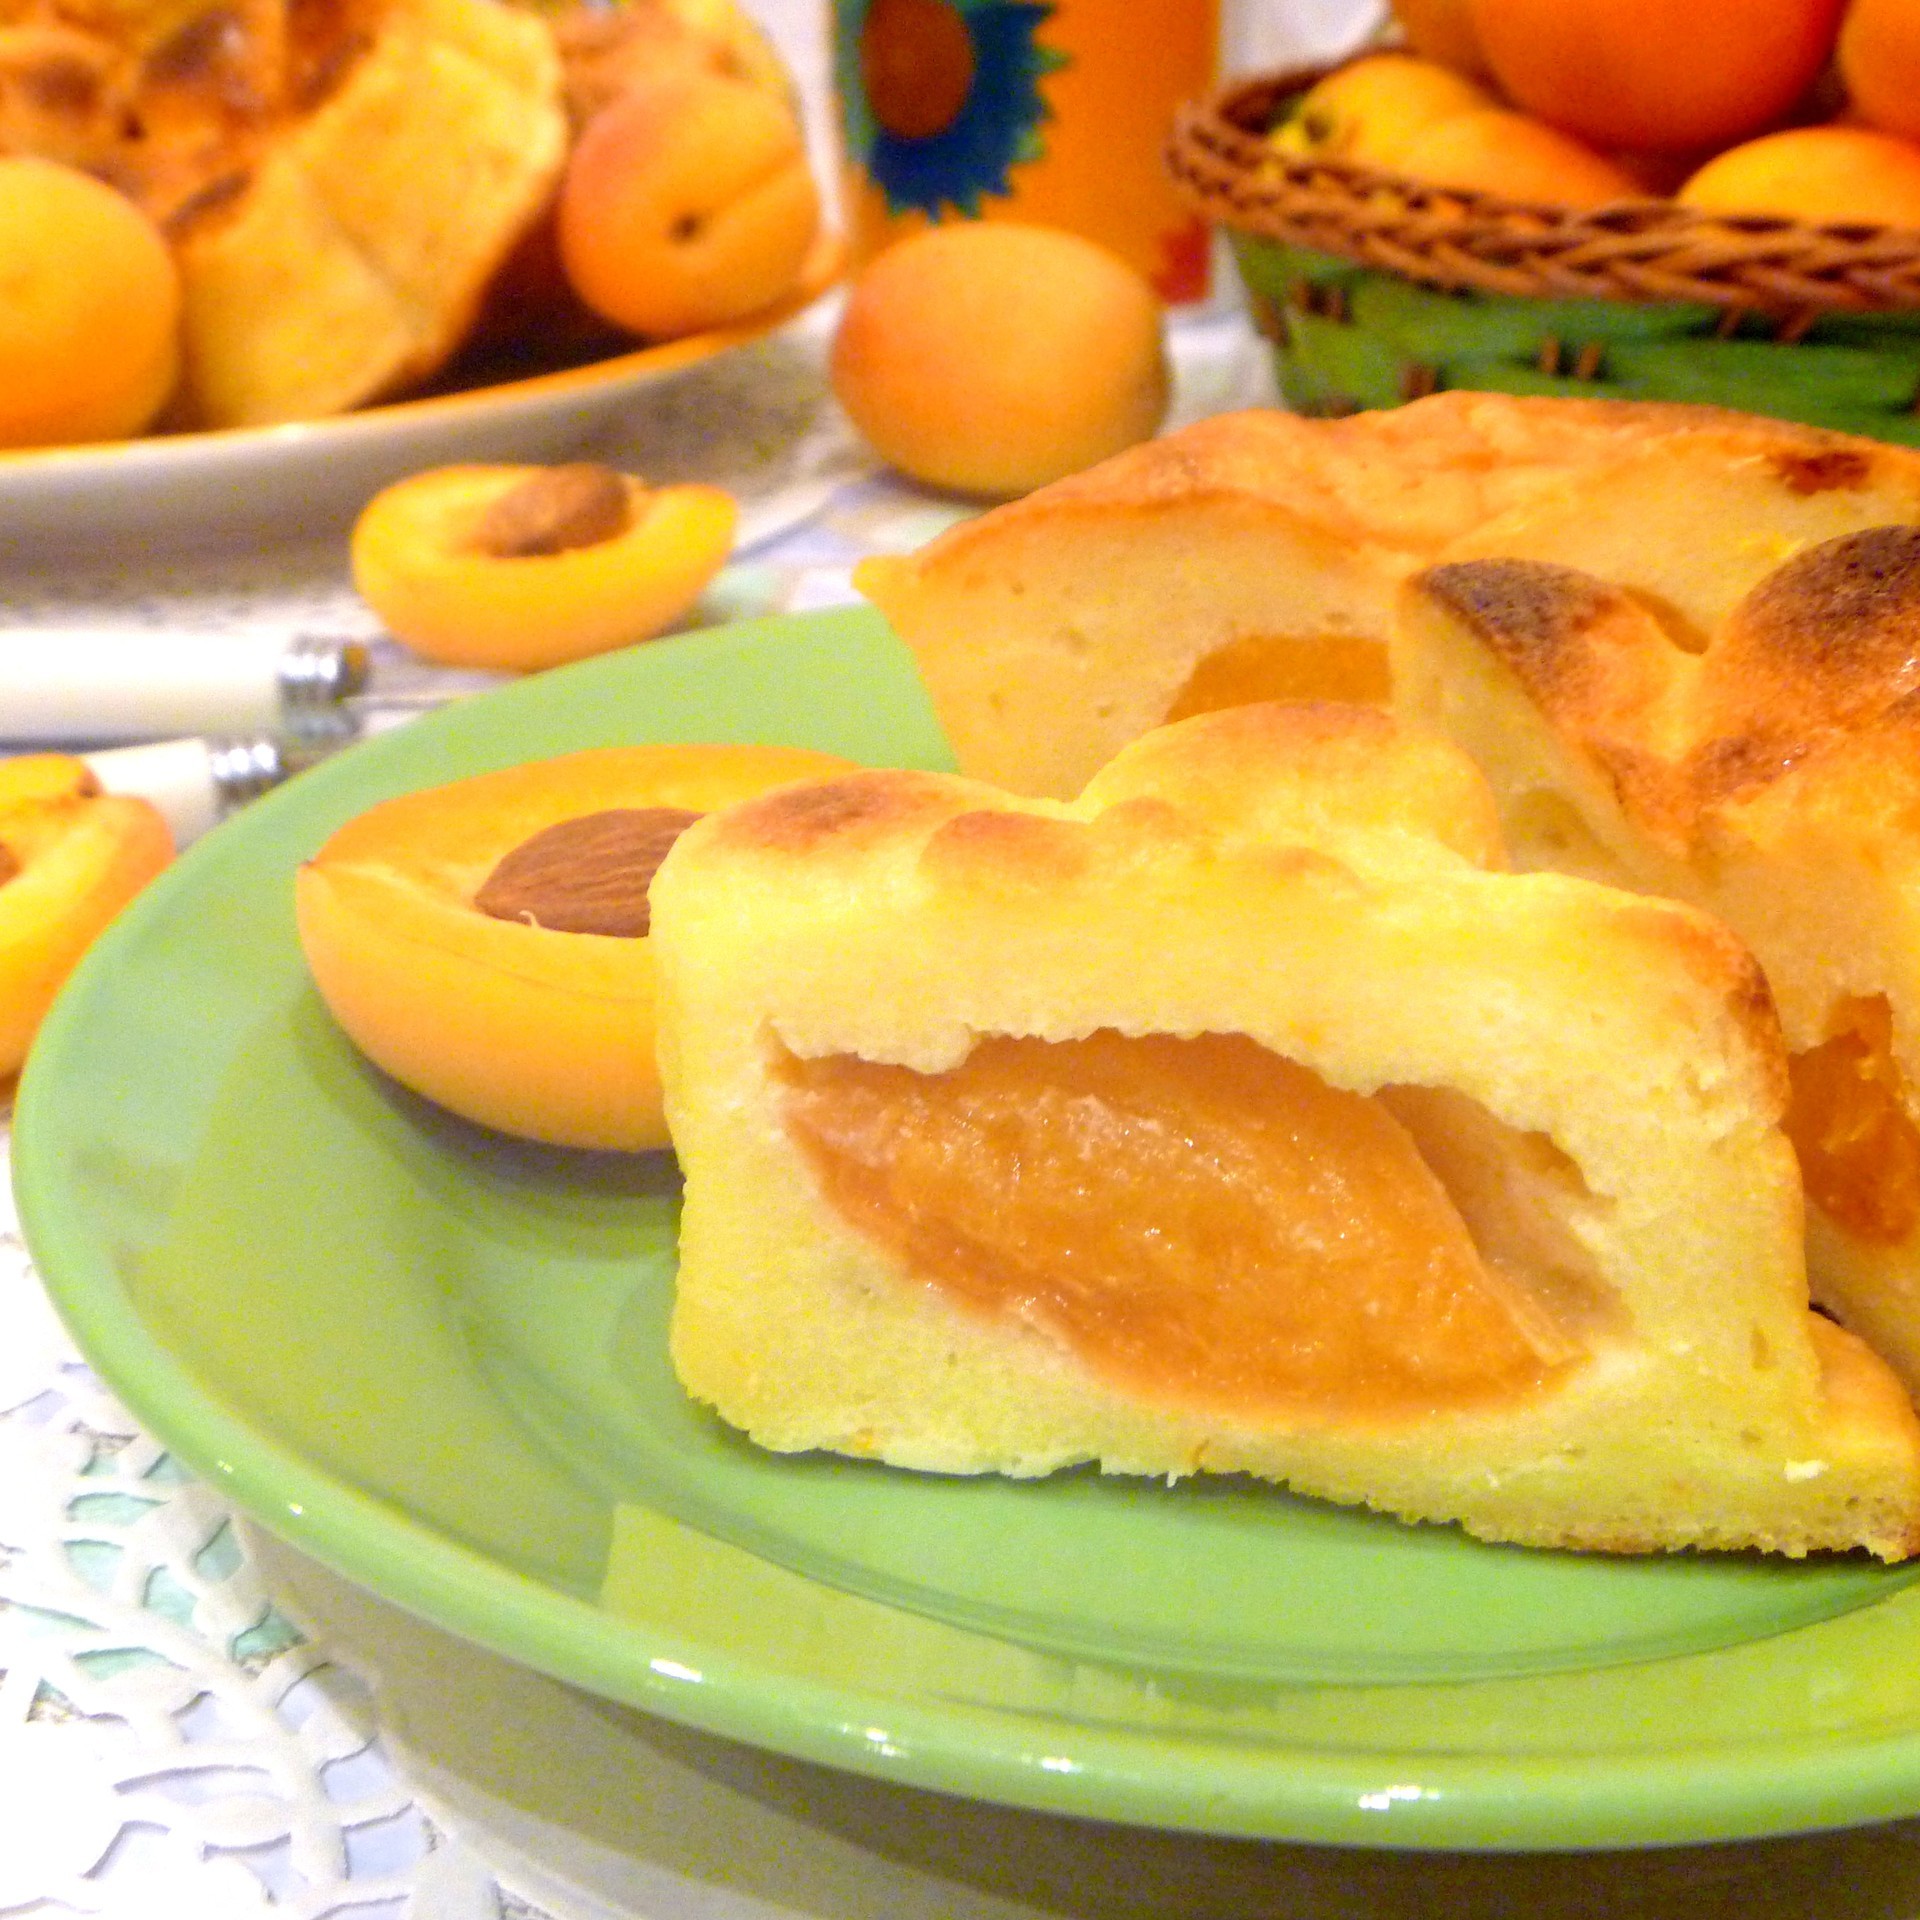 Фото к рецепту: Сырники с абрикосами